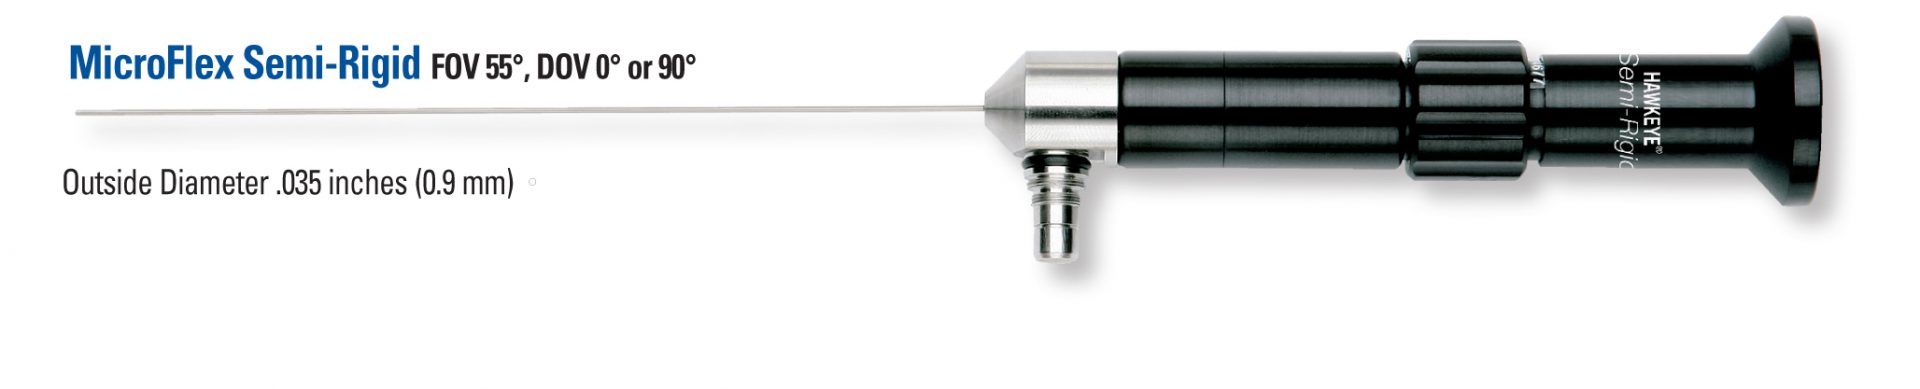 MicroFlex Semi-Rigid Borescope